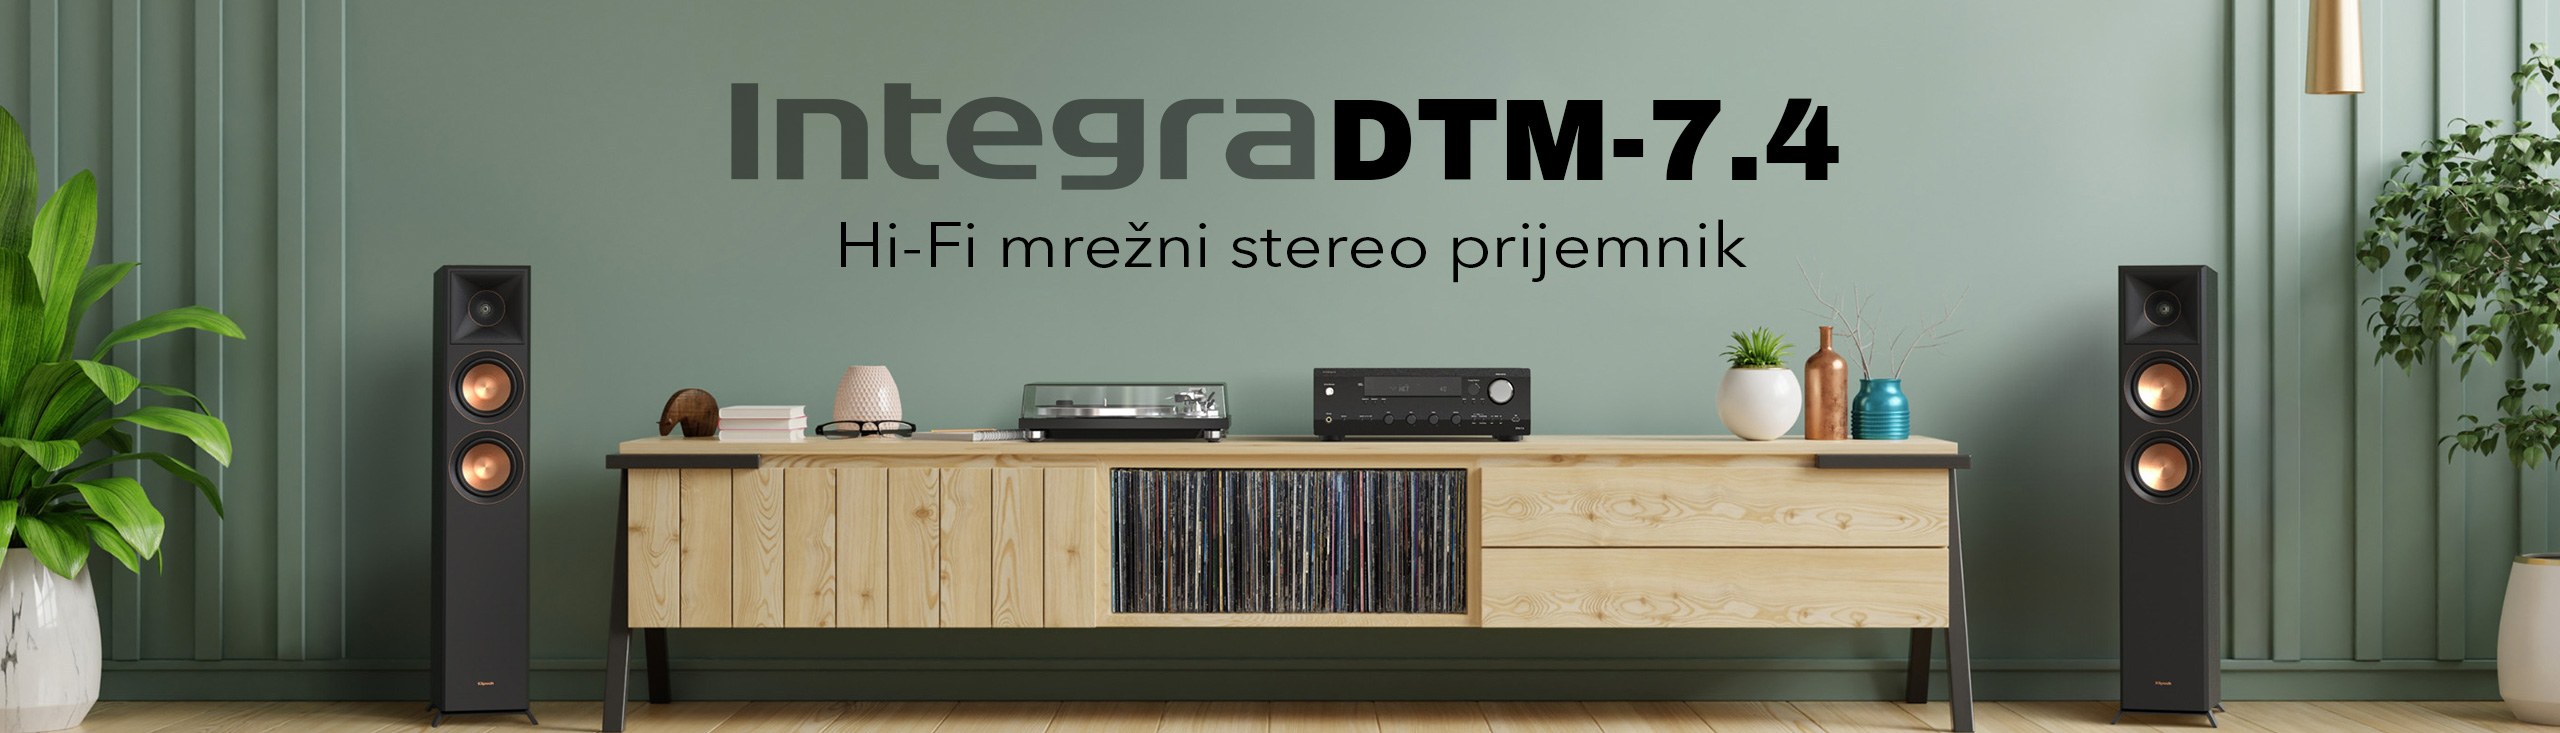 DTM-7.4 Hi-Fi mrežni stereo prijemnik - Integra kućno kino